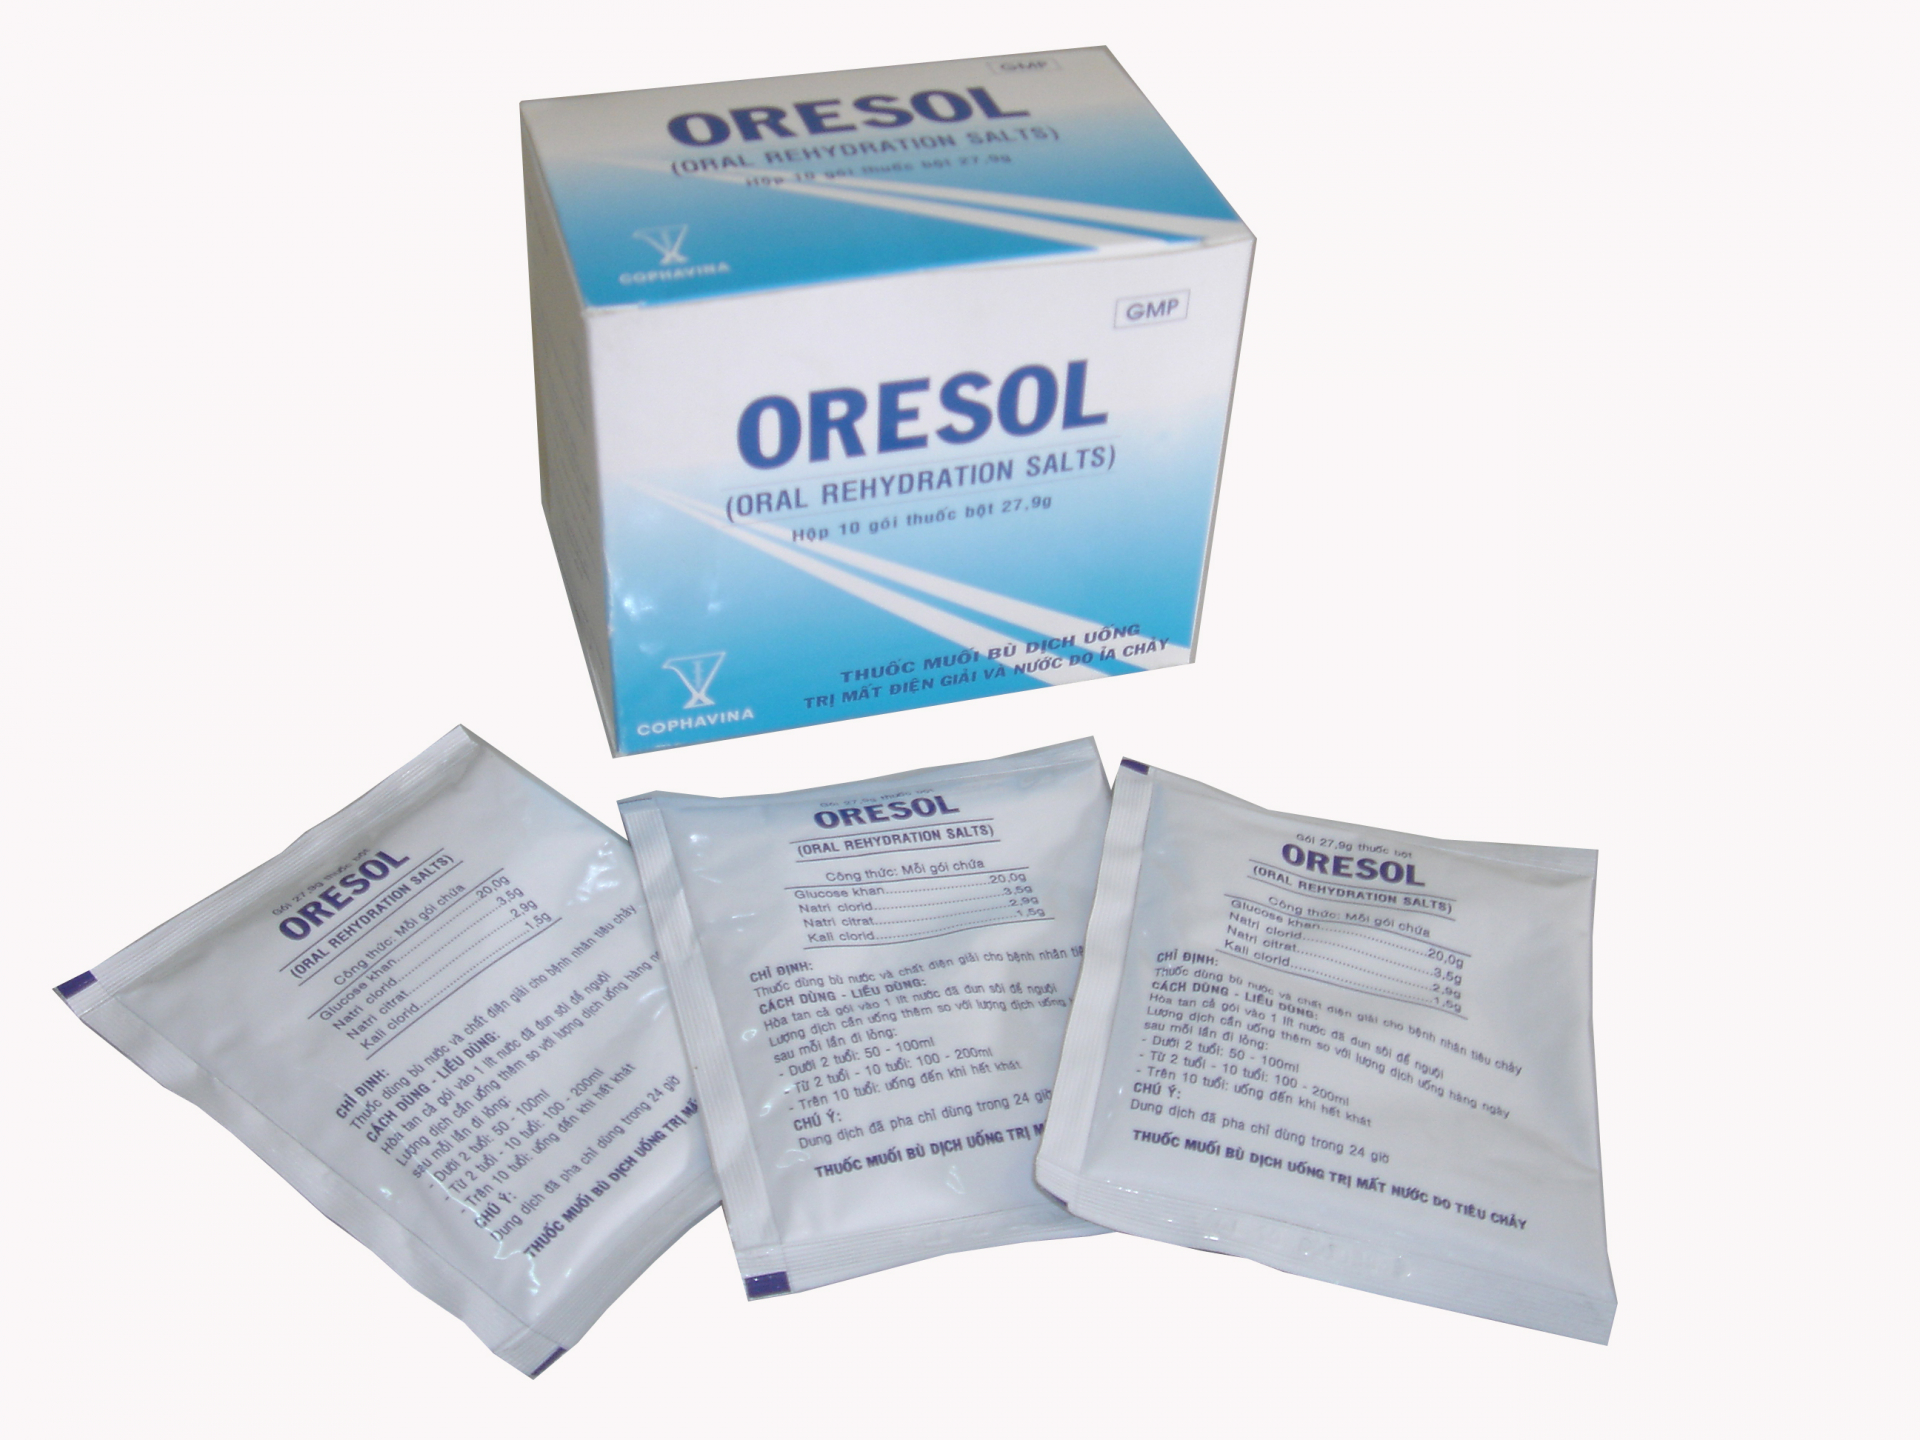 Mua thuốc oresol theo đúng chỉ định của bác sĩ và sử dụng theo đúng hướng dẫn để không gây nguy hại cho trẻ